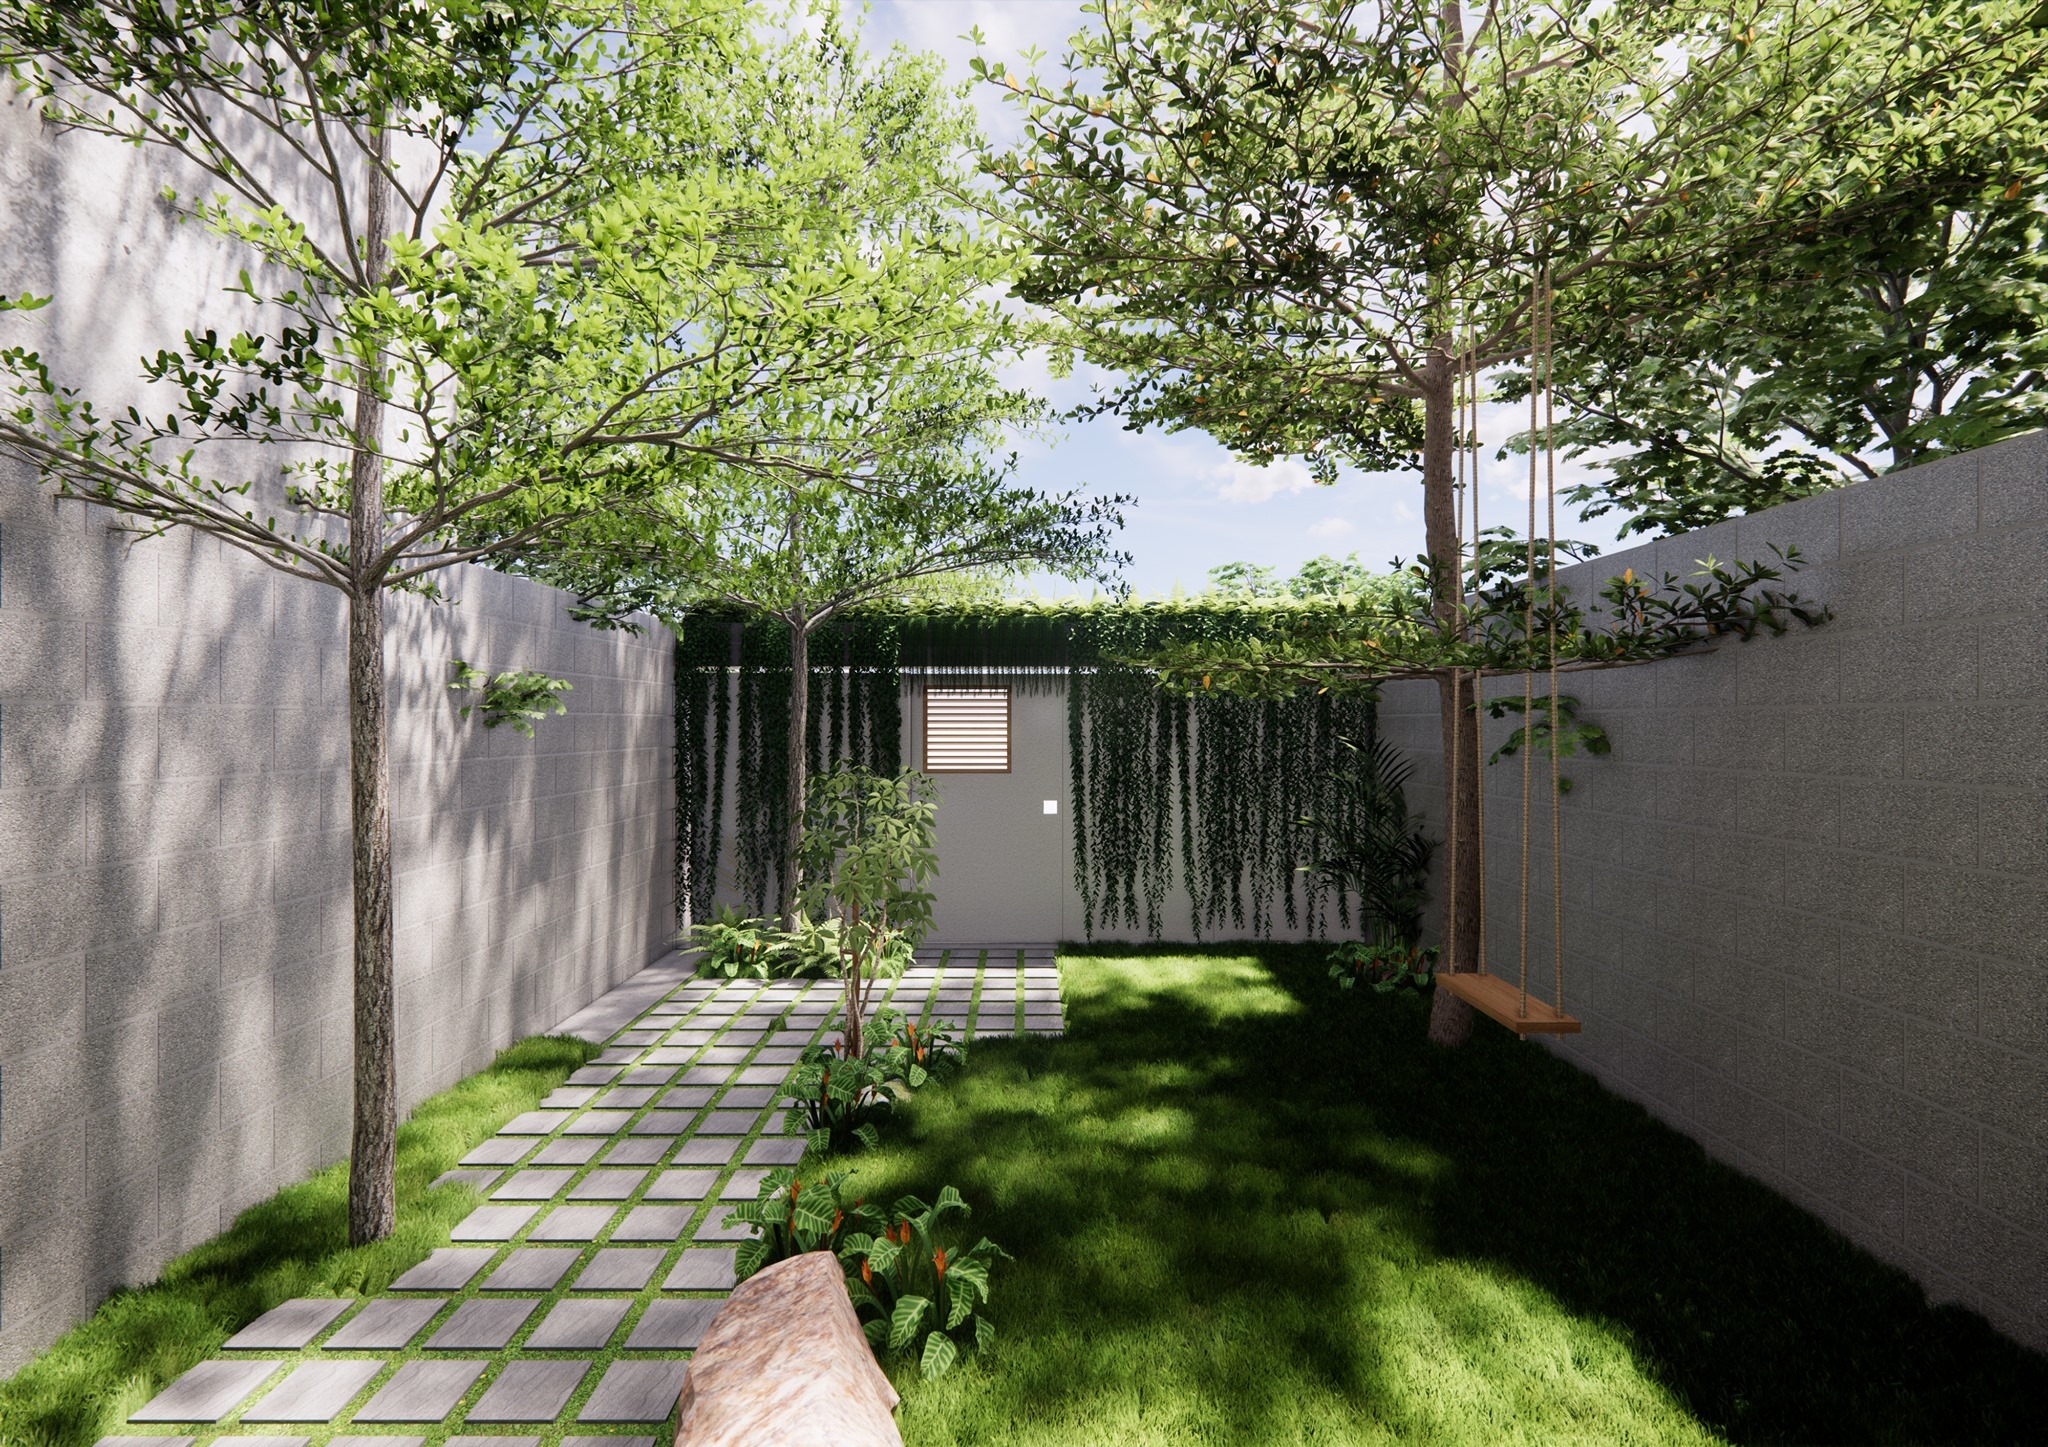 Sân vườn sau nhà ống với thiết kế cây xanh thoáng đãng, mang lại cảm giác dễ chịu